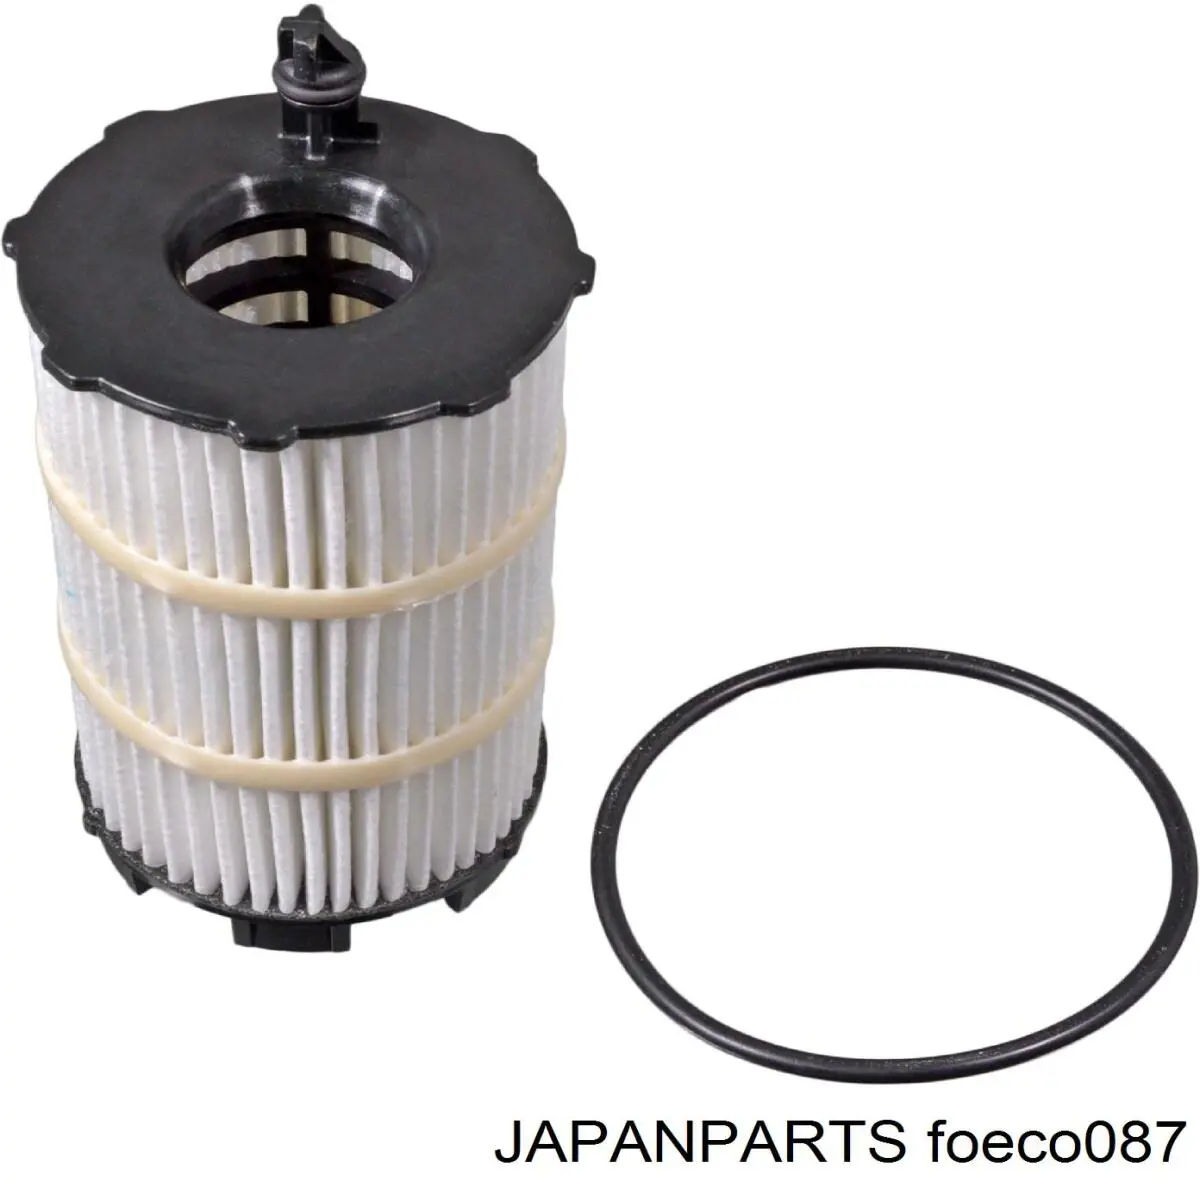 Фильтр масляный Japan Parts FOECO087